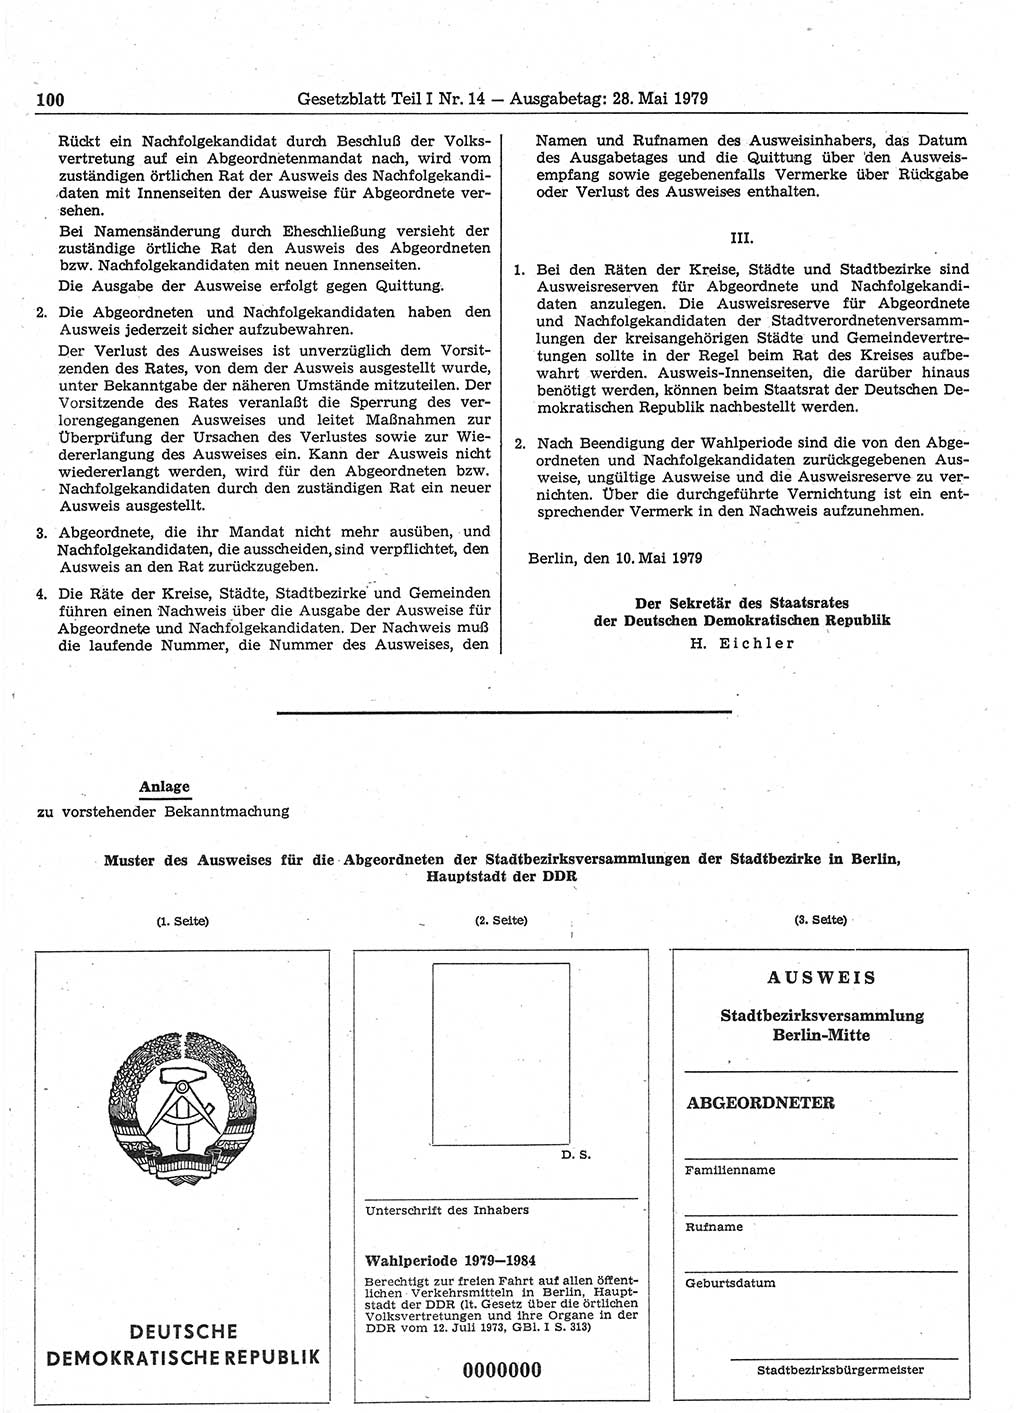 Gesetzblatt (GBl.) der Deutschen Demokratischen Republik (DDR) Teil Ⅰ 1979, Seite 100 (GBl. DDR Ⅰ 1979, S. 100)